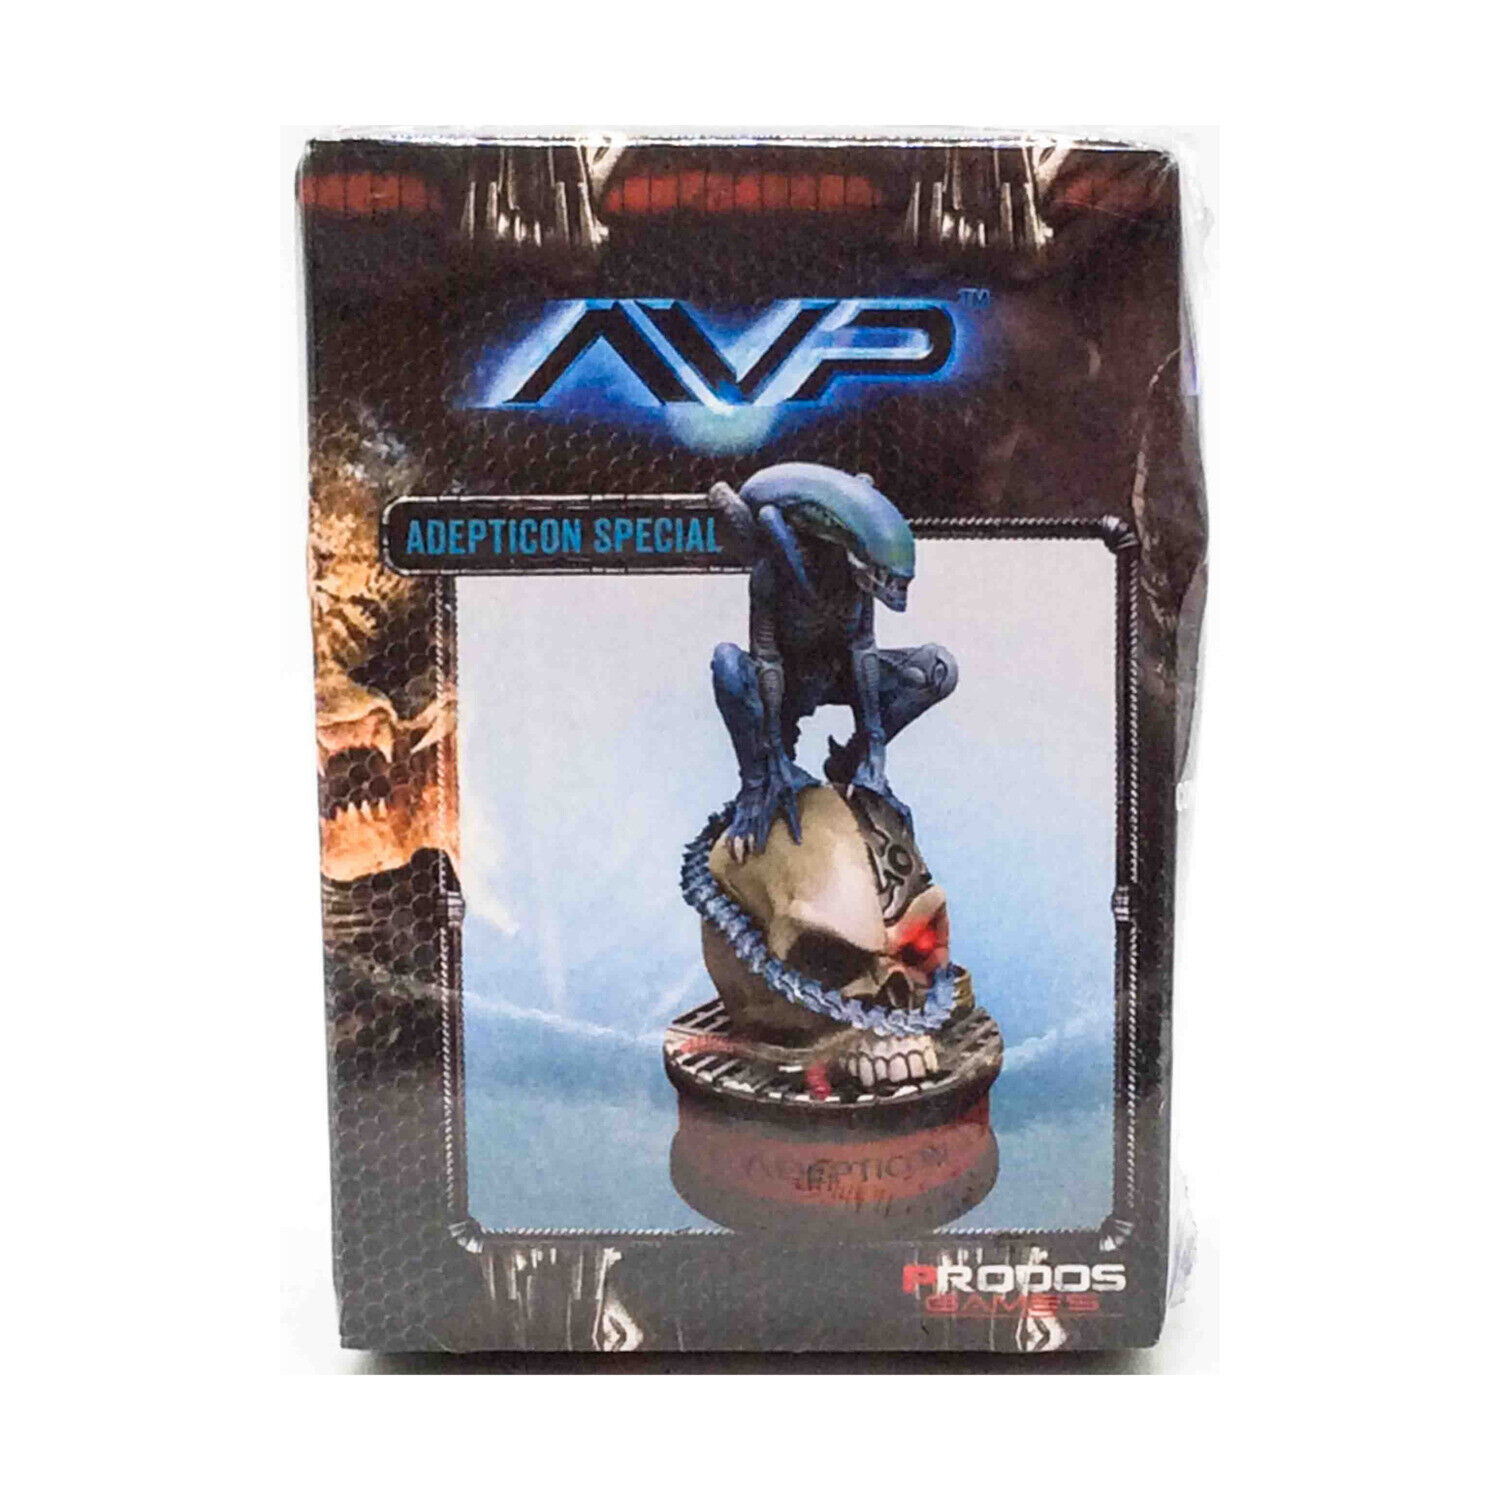 Prodos Alien vs. Predator Model Alien (Adepticon Special) SW